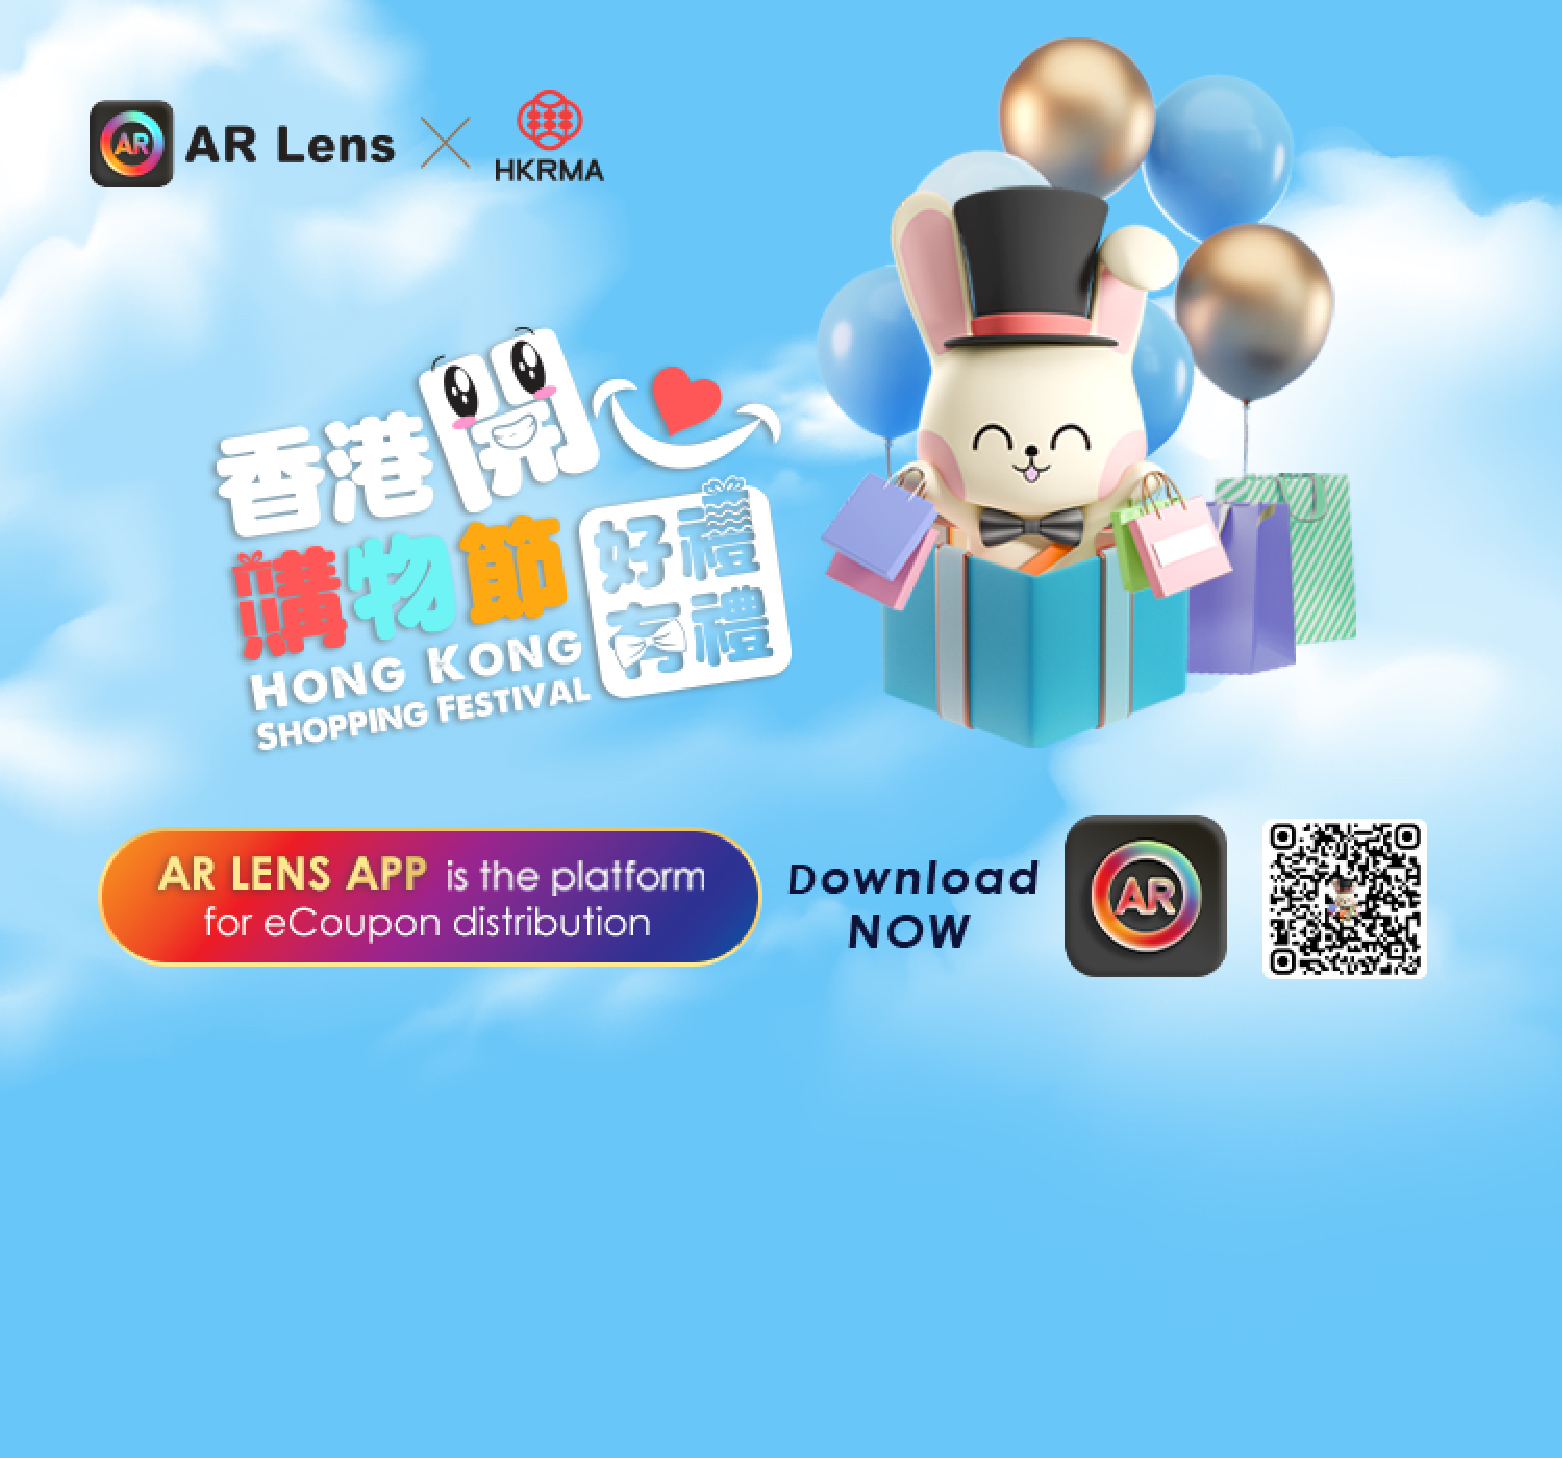 AR Lens x HKRMA Hong Kong Shopping Festival​